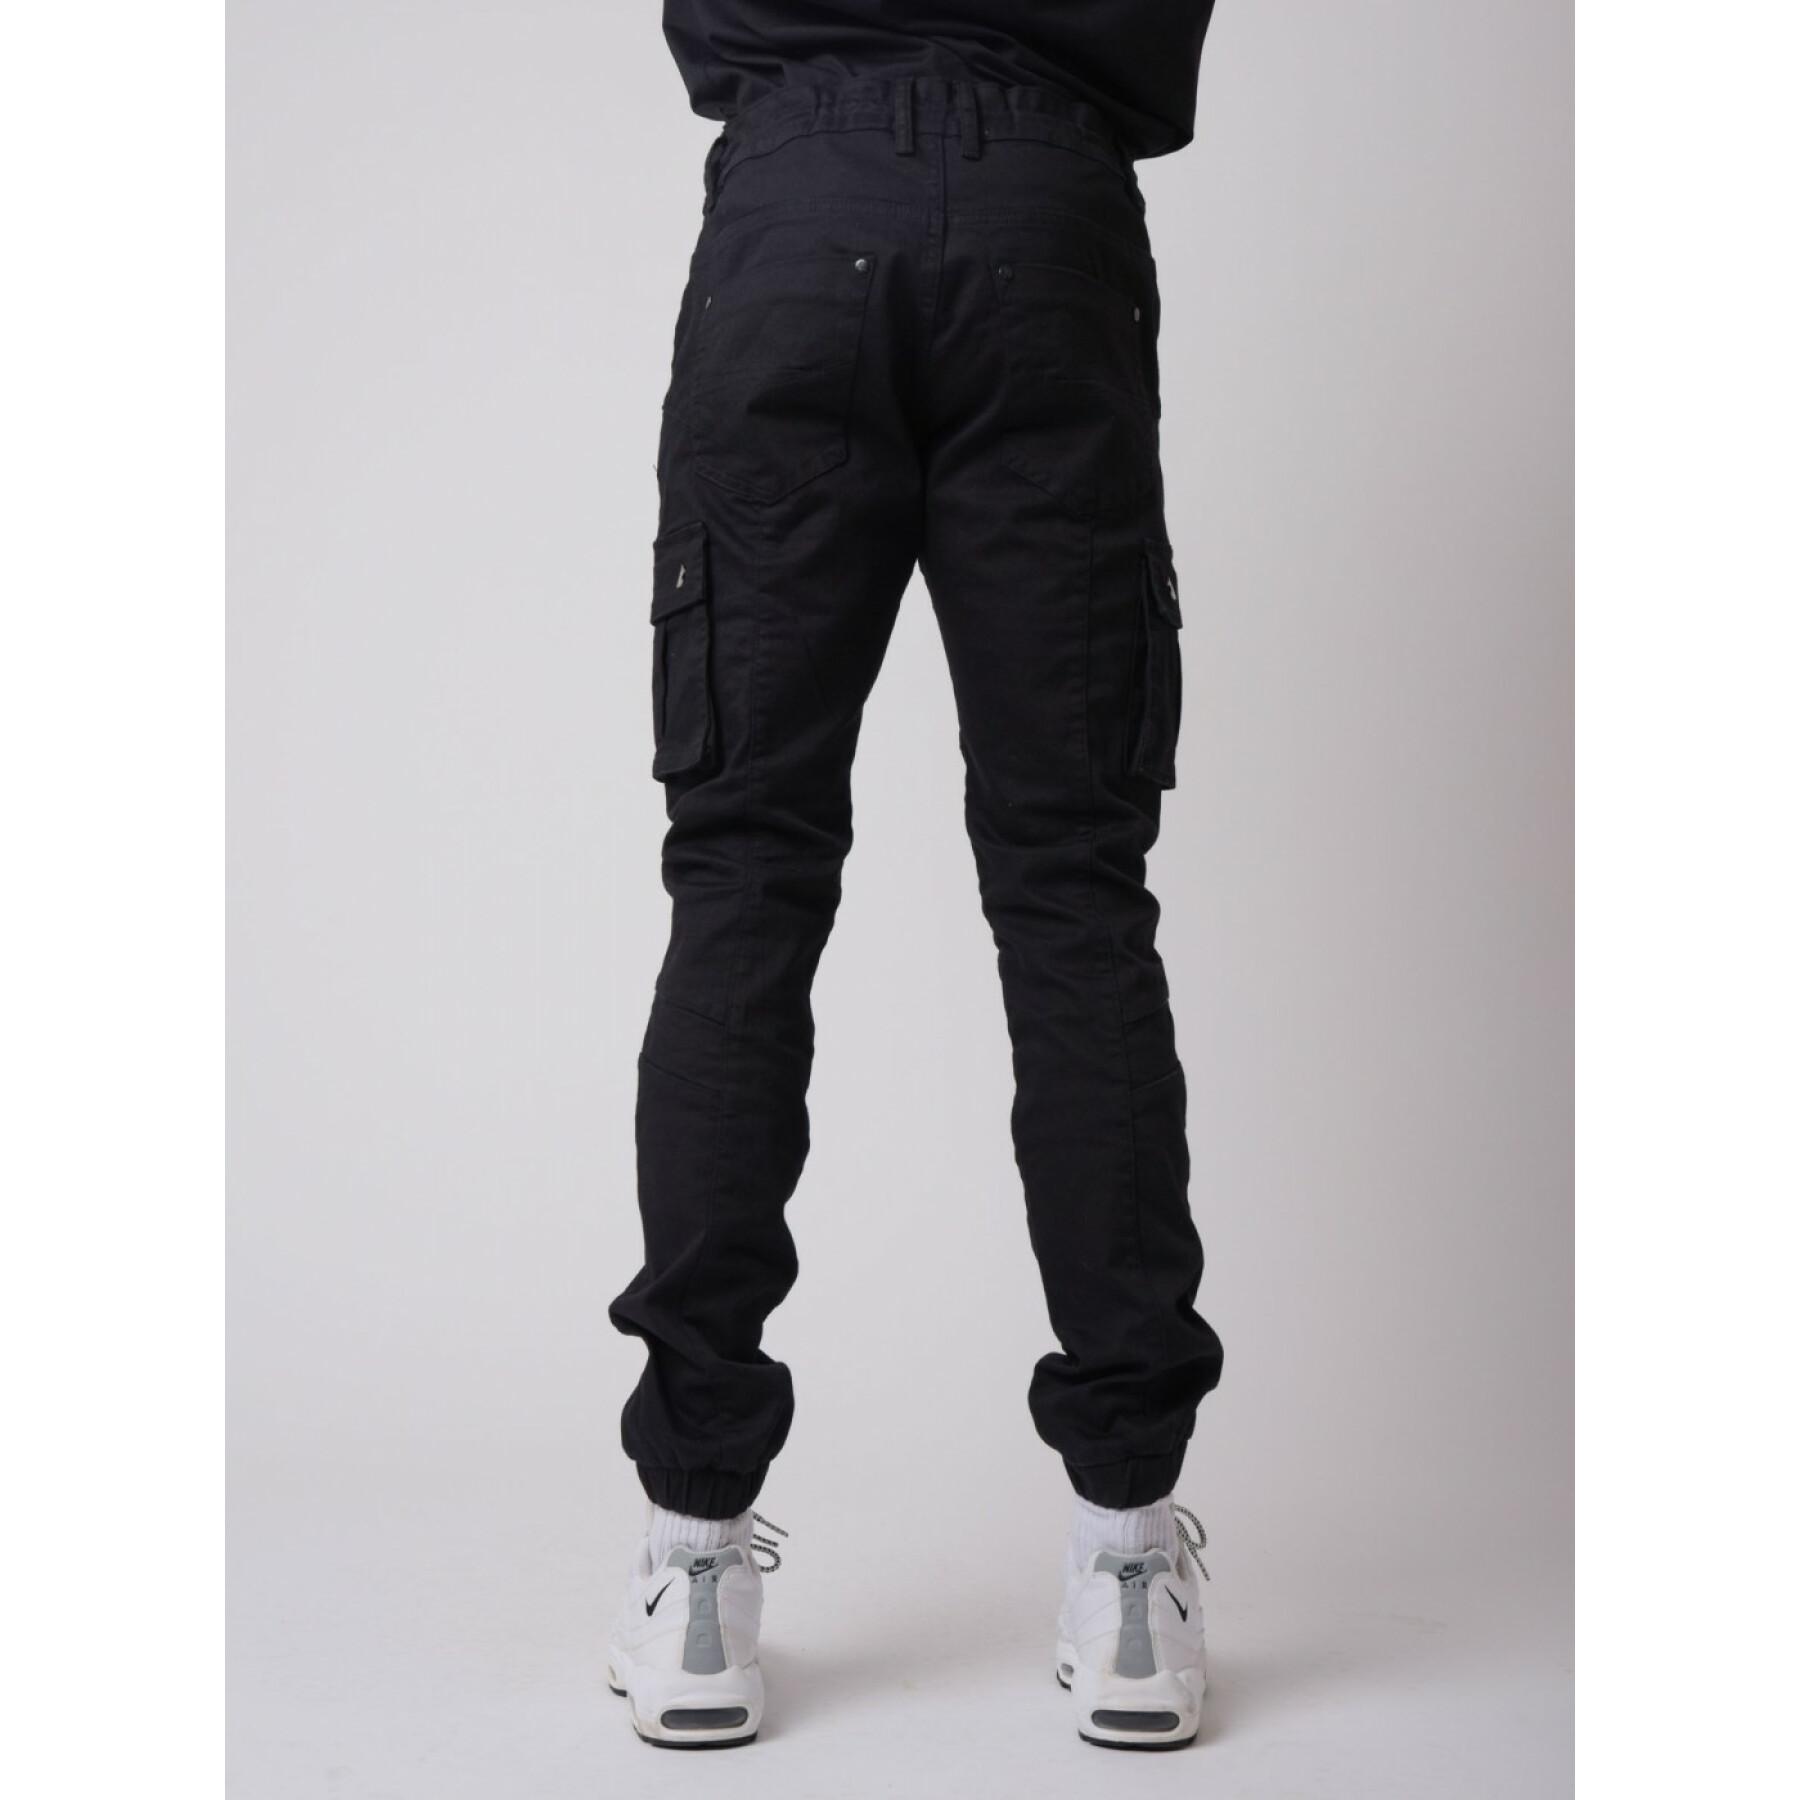 Project x paris - jeans cargo slim fit